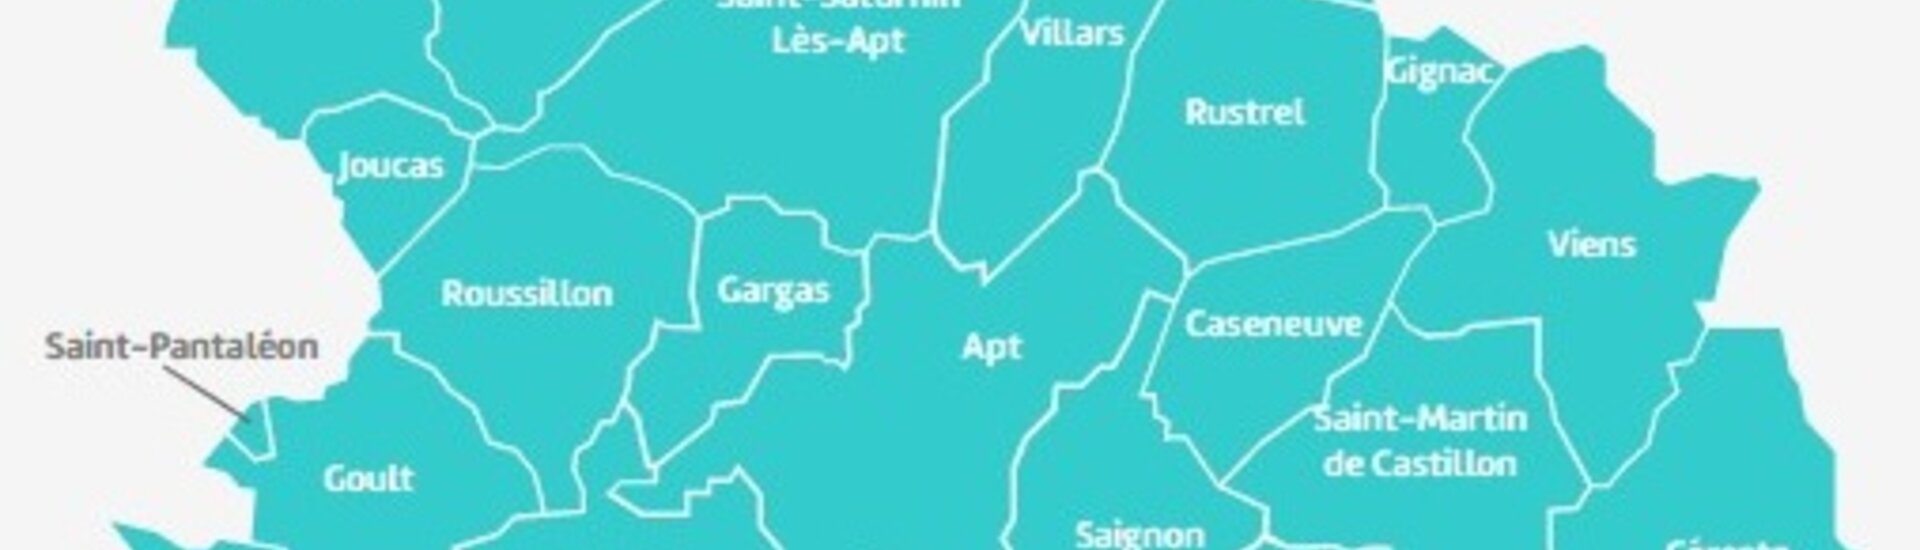 Communauté de communes Pays d'Apt Luberon : ses missions